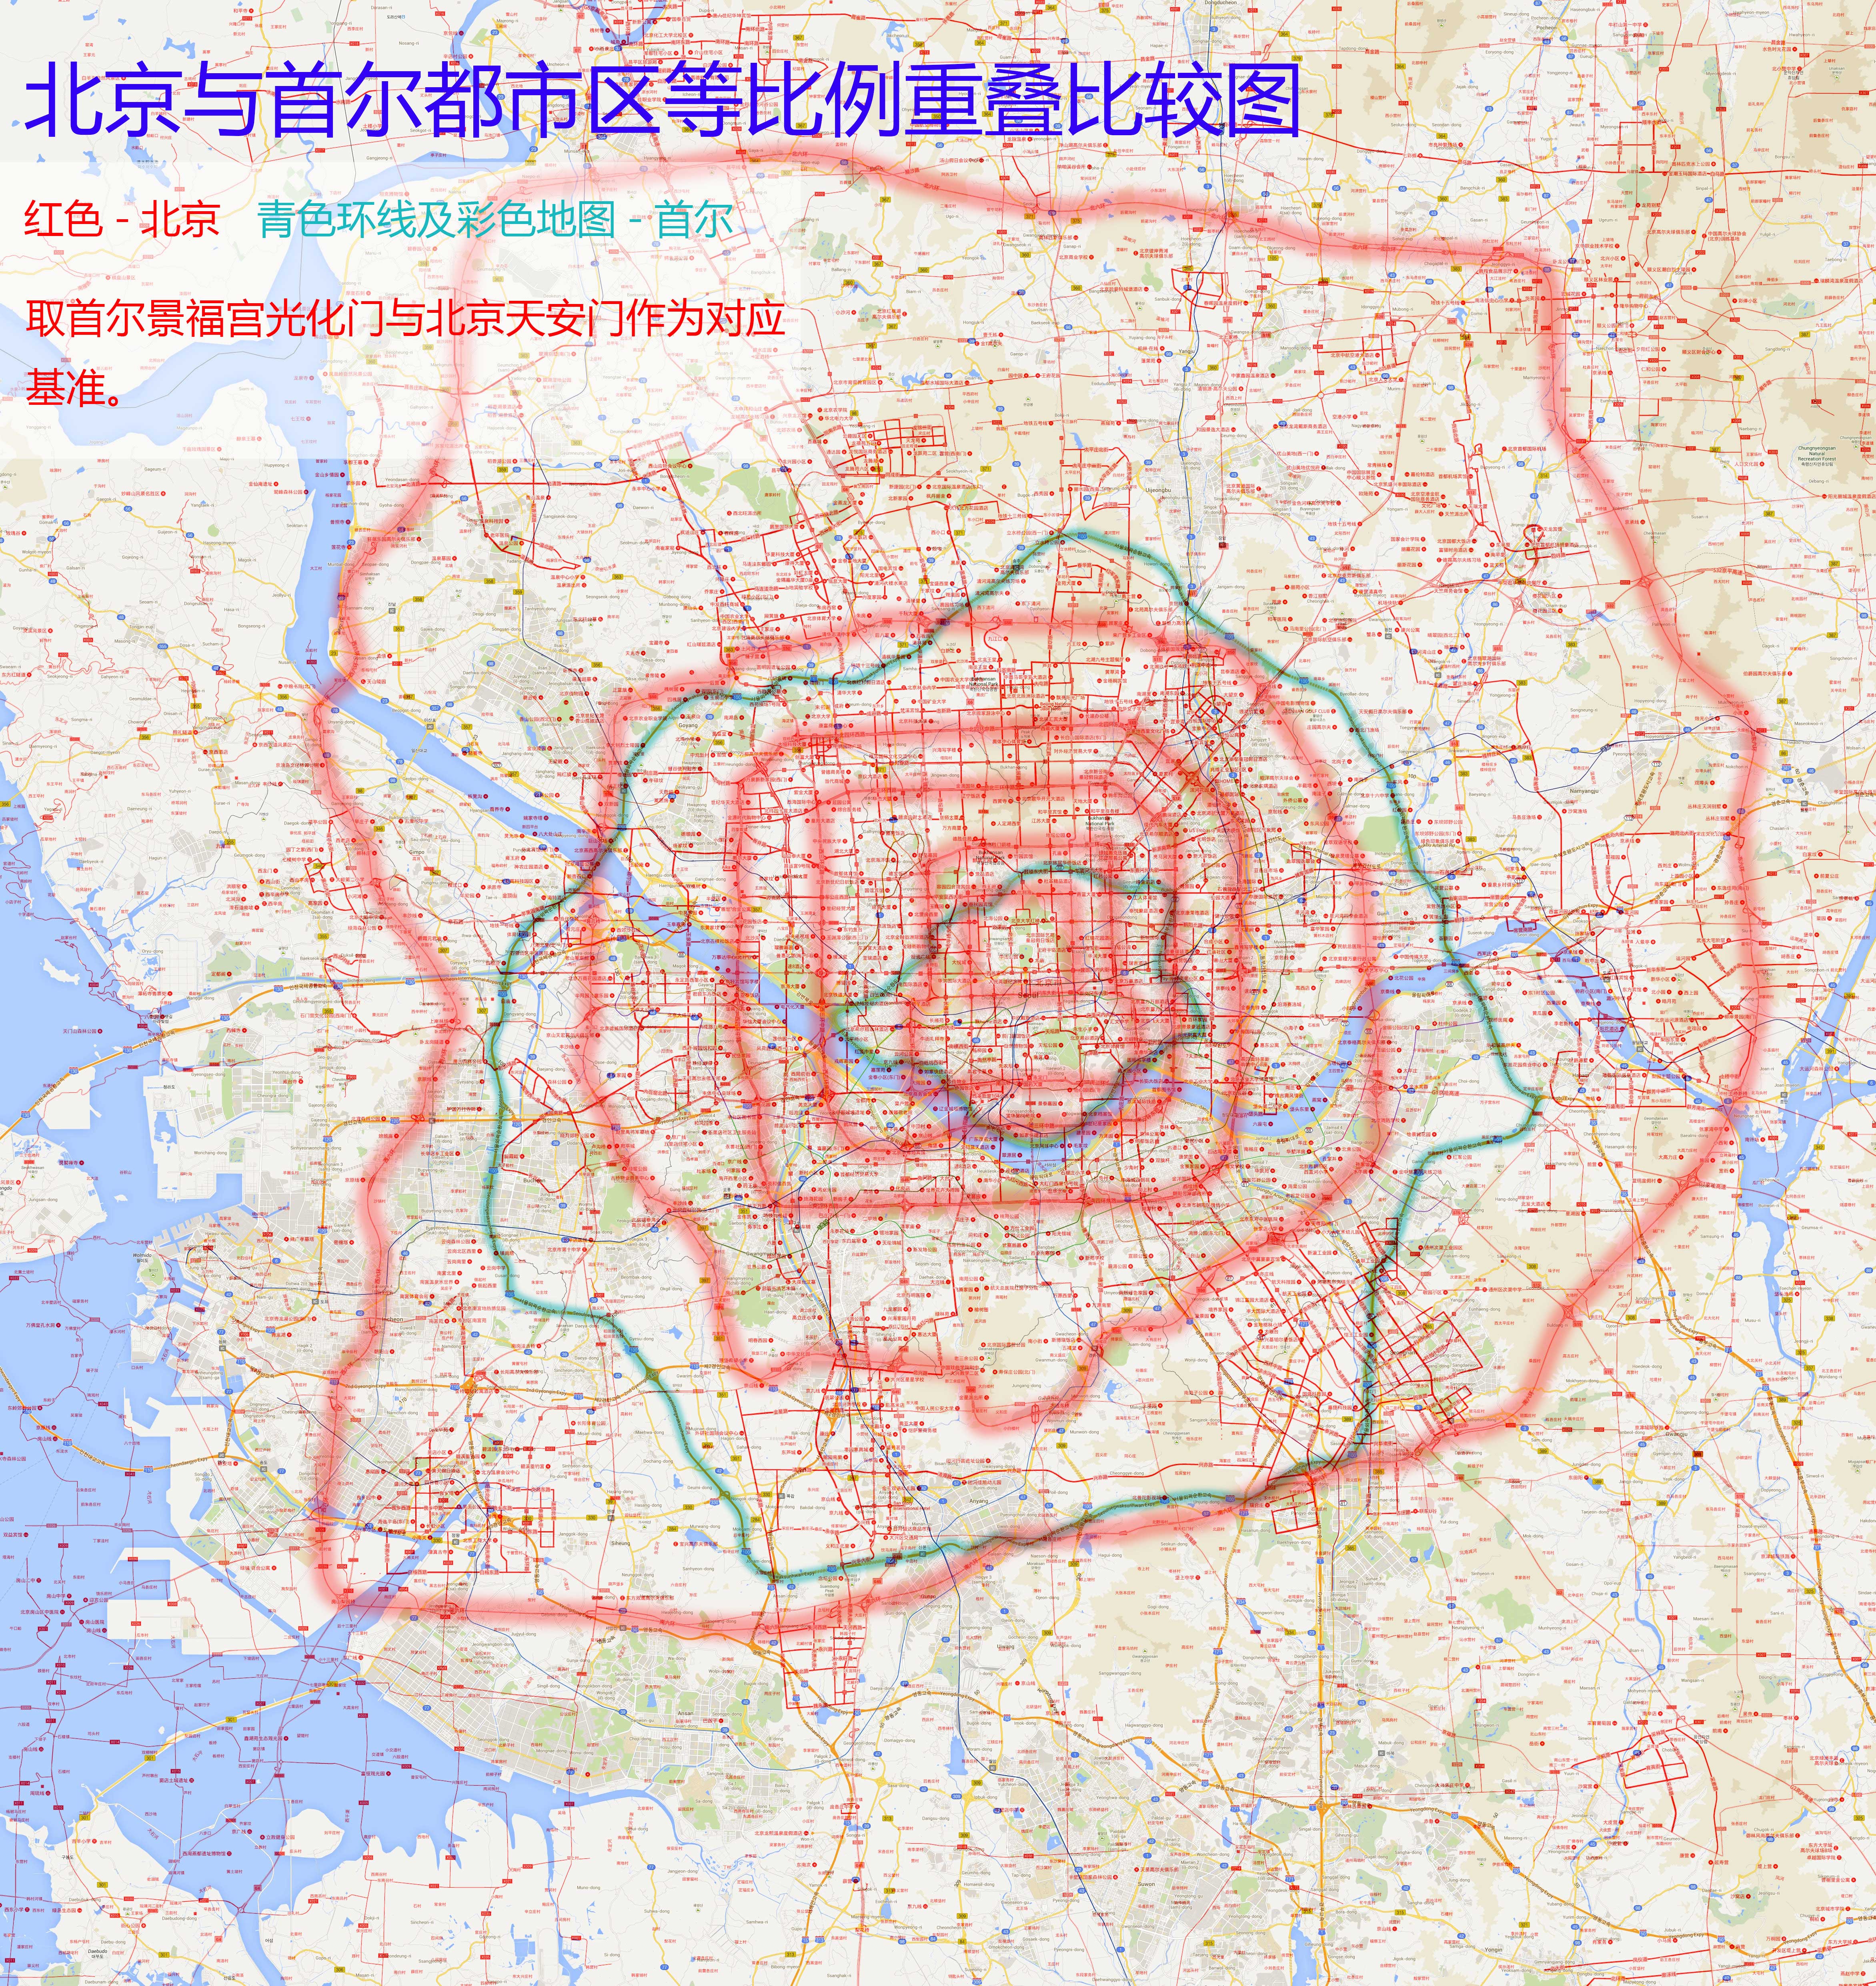 城市比较系列图 北京与贵阳都市区等比例重叠比较地图http://xzqh.图片